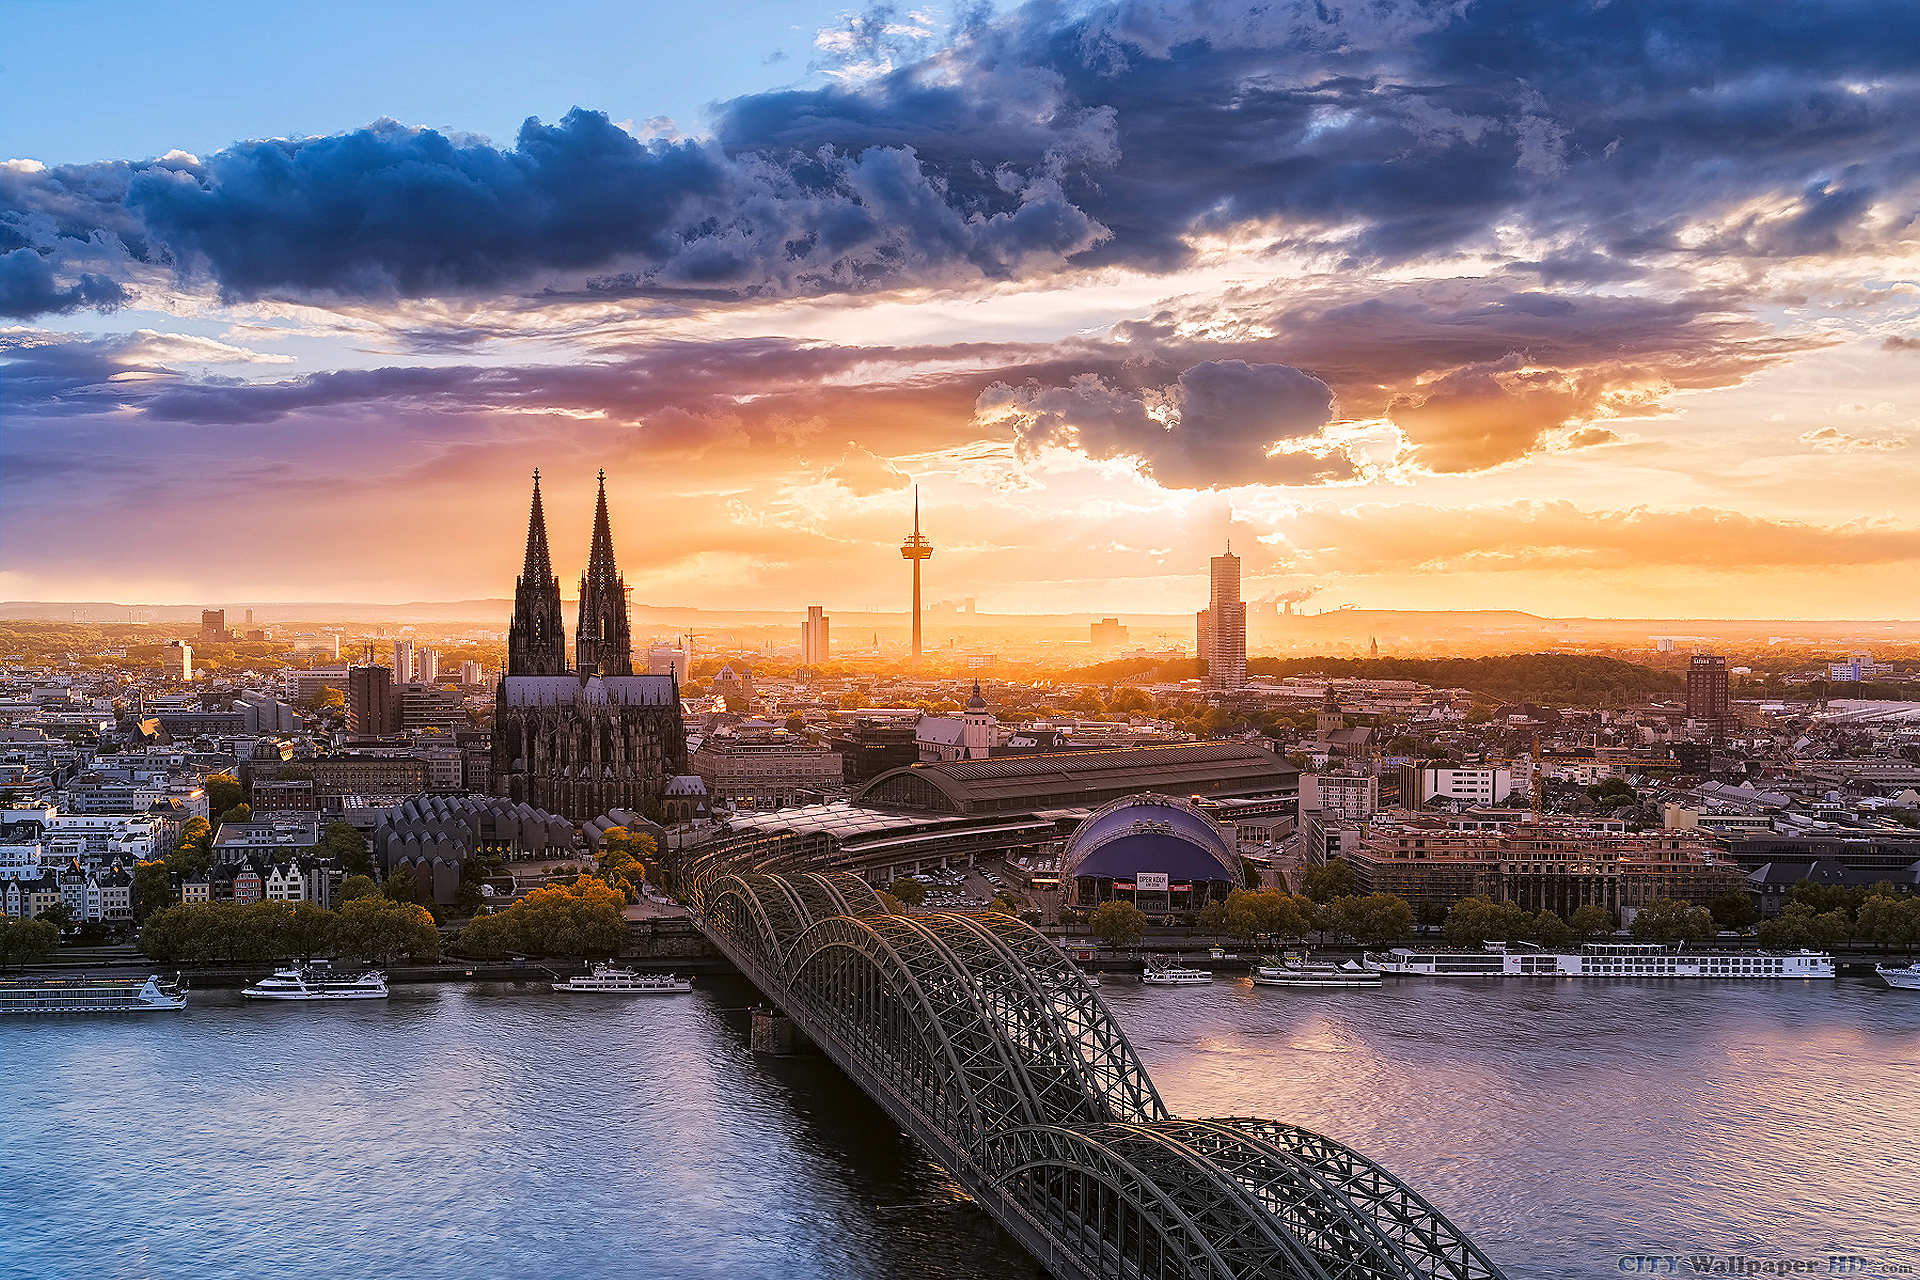 Fondos de escritorio de Colonia. Paisajes urbanos gratuito para PC.  Colonia, Alemania, puente, río, cielo.